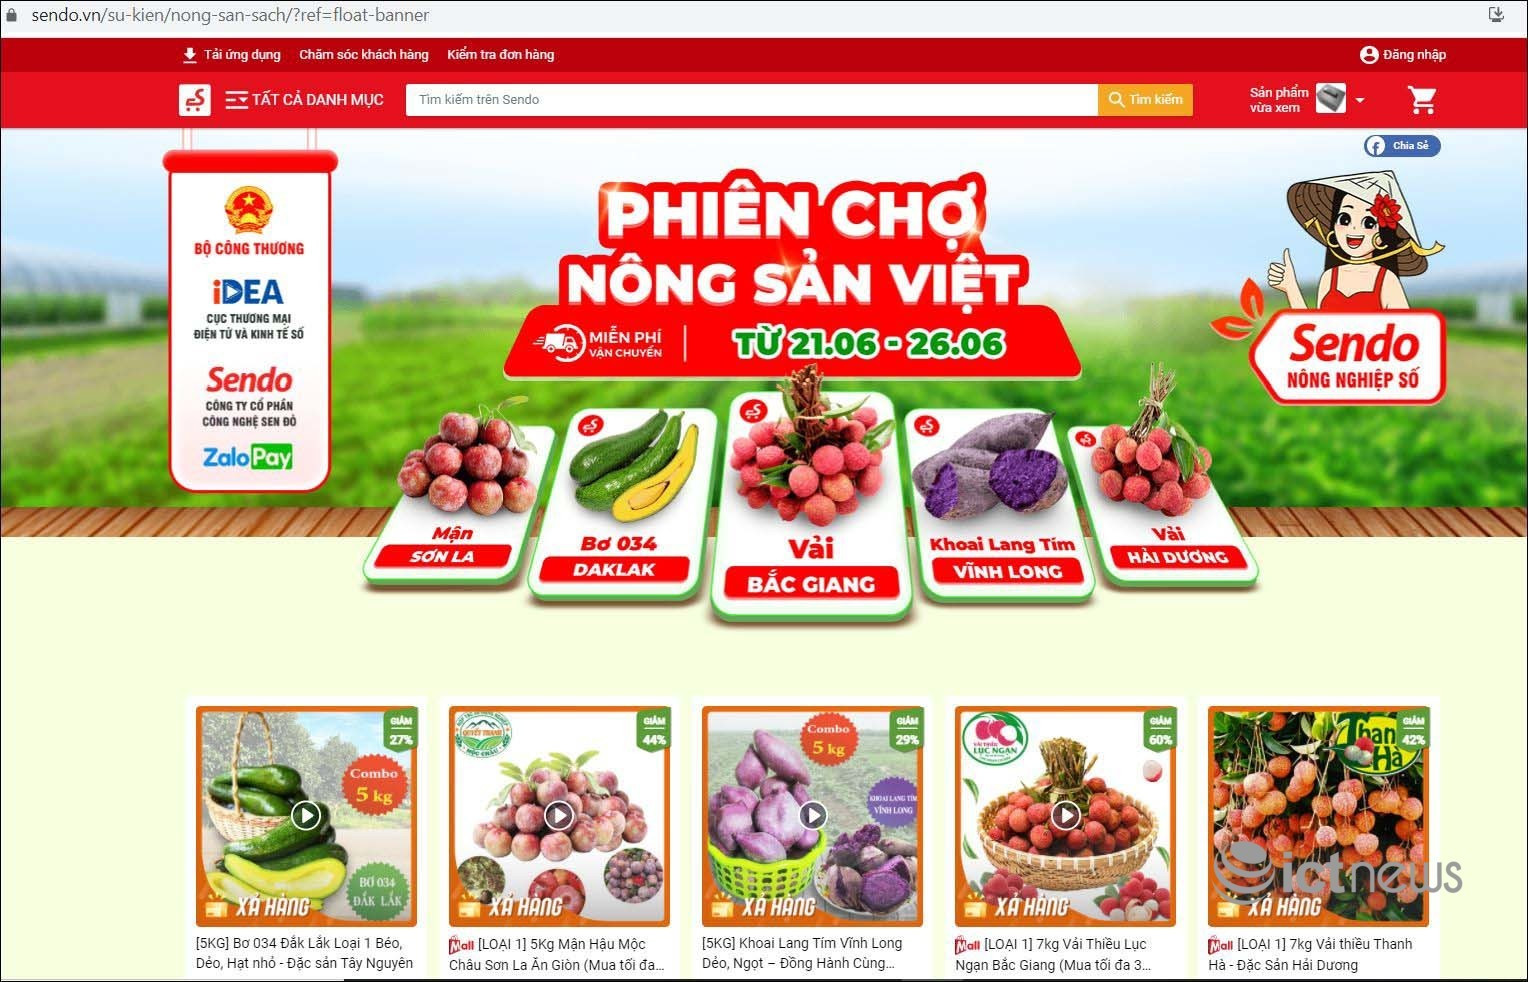 Nông dân 5 tỉnh mang đặc sản lên bán tại “Phiên chợ nông sản Việt trực tuyến” - Ảnh 1.